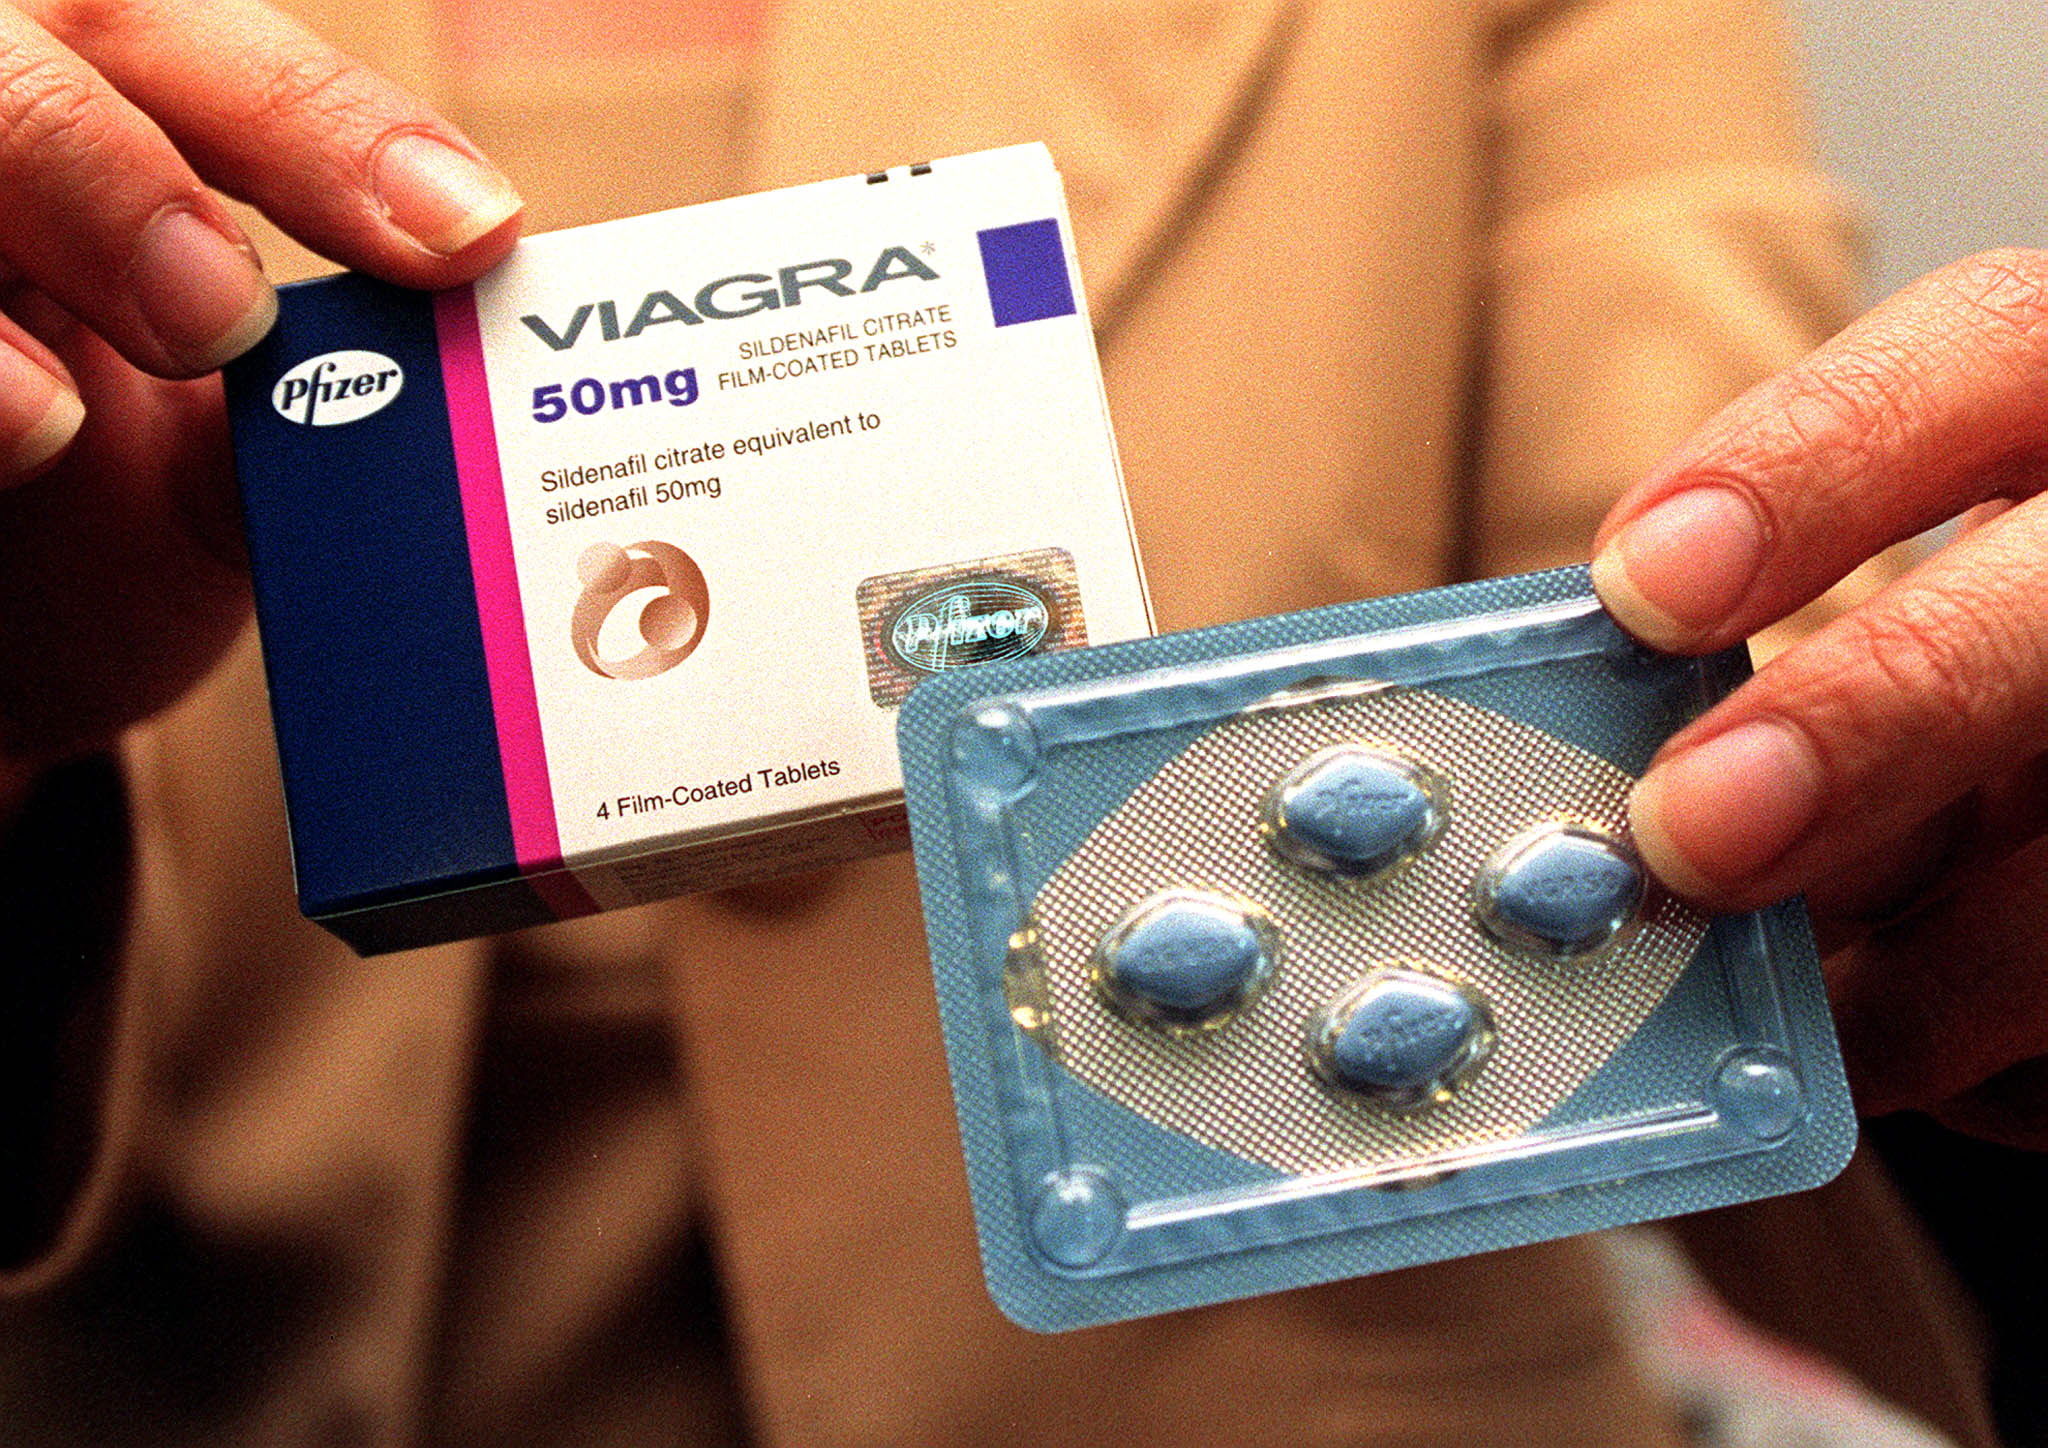 Est-ce qu'une femme peut prendre du Viagra ? - Ça m'intéresse